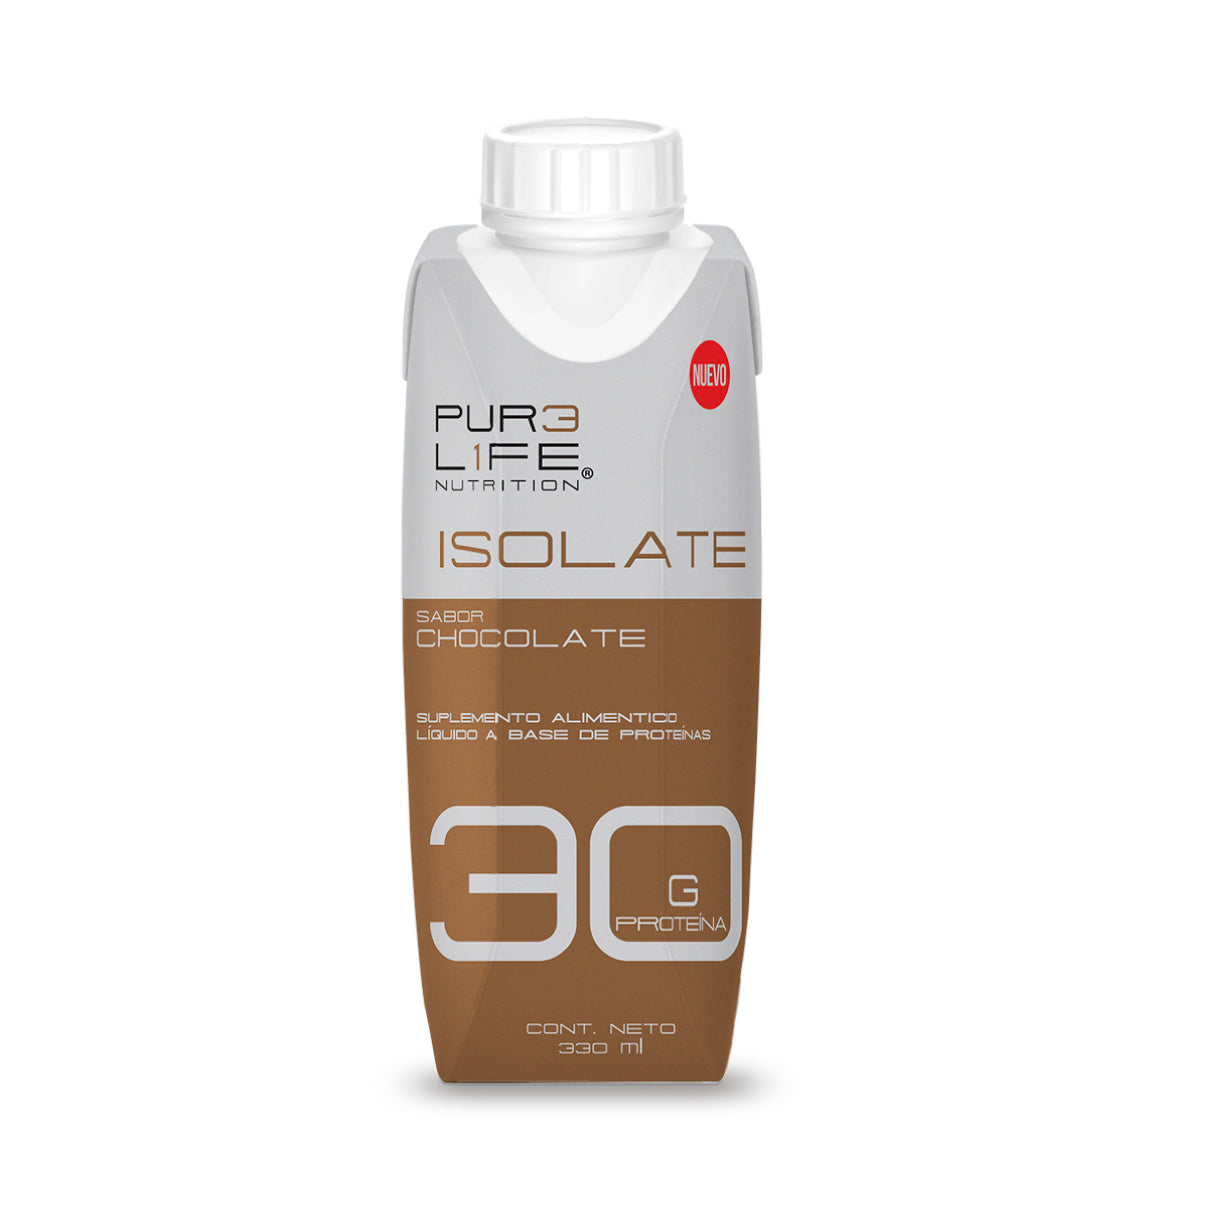 Pure Life Proteína Isolate Rtd, 12 Piezas 330 ml c/u. Sabor Chocolate